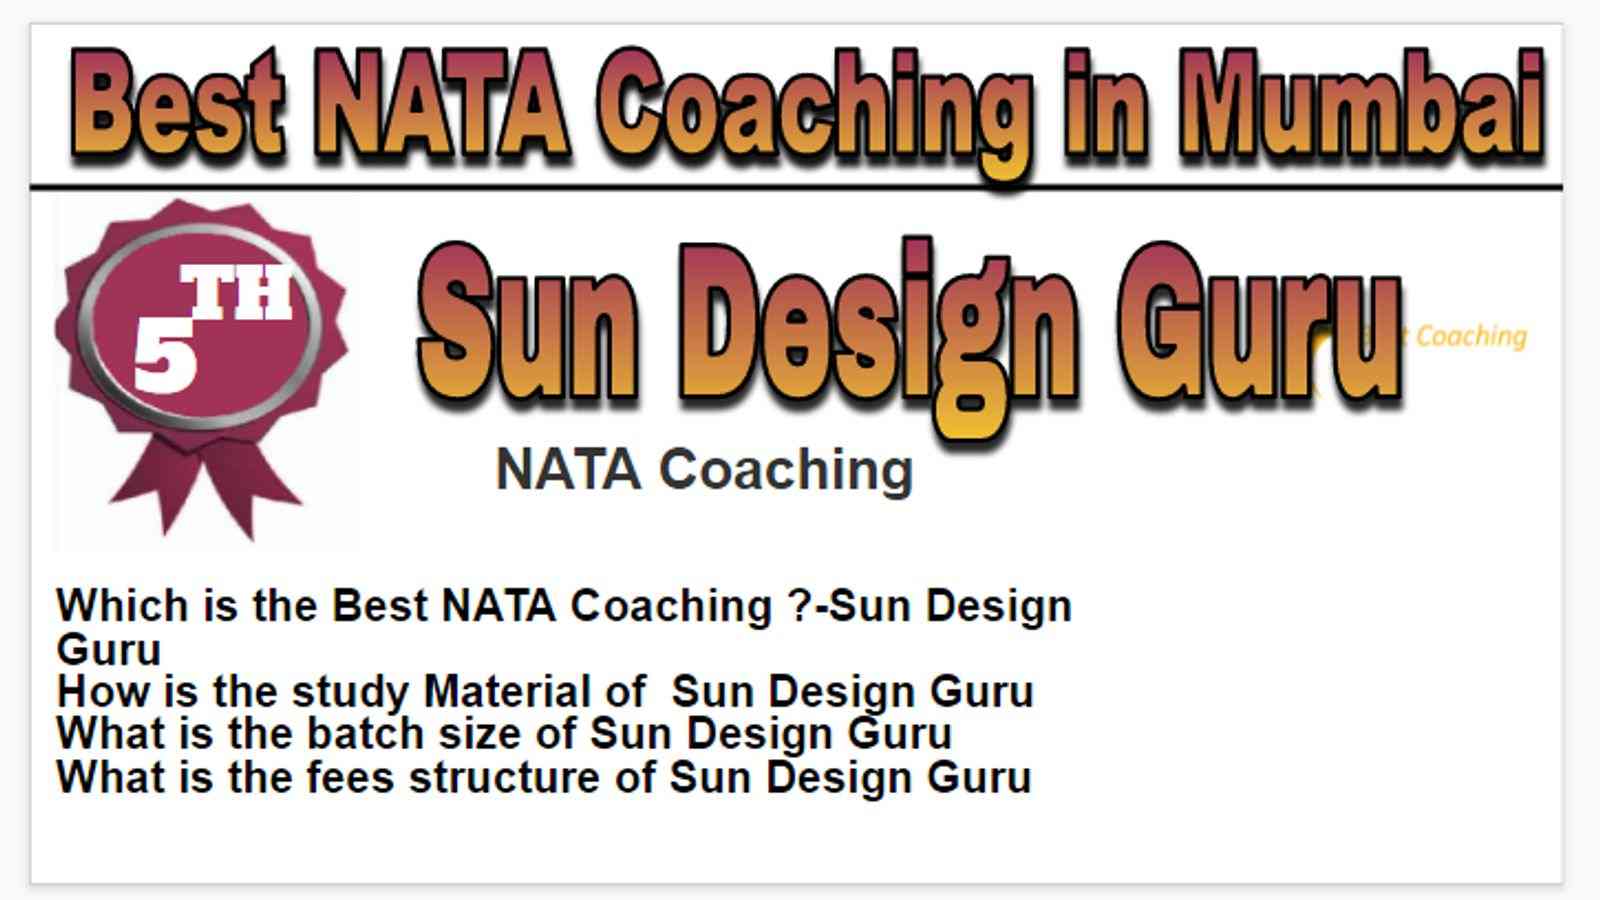 Rank 5 best NATA coaching in Mumbai